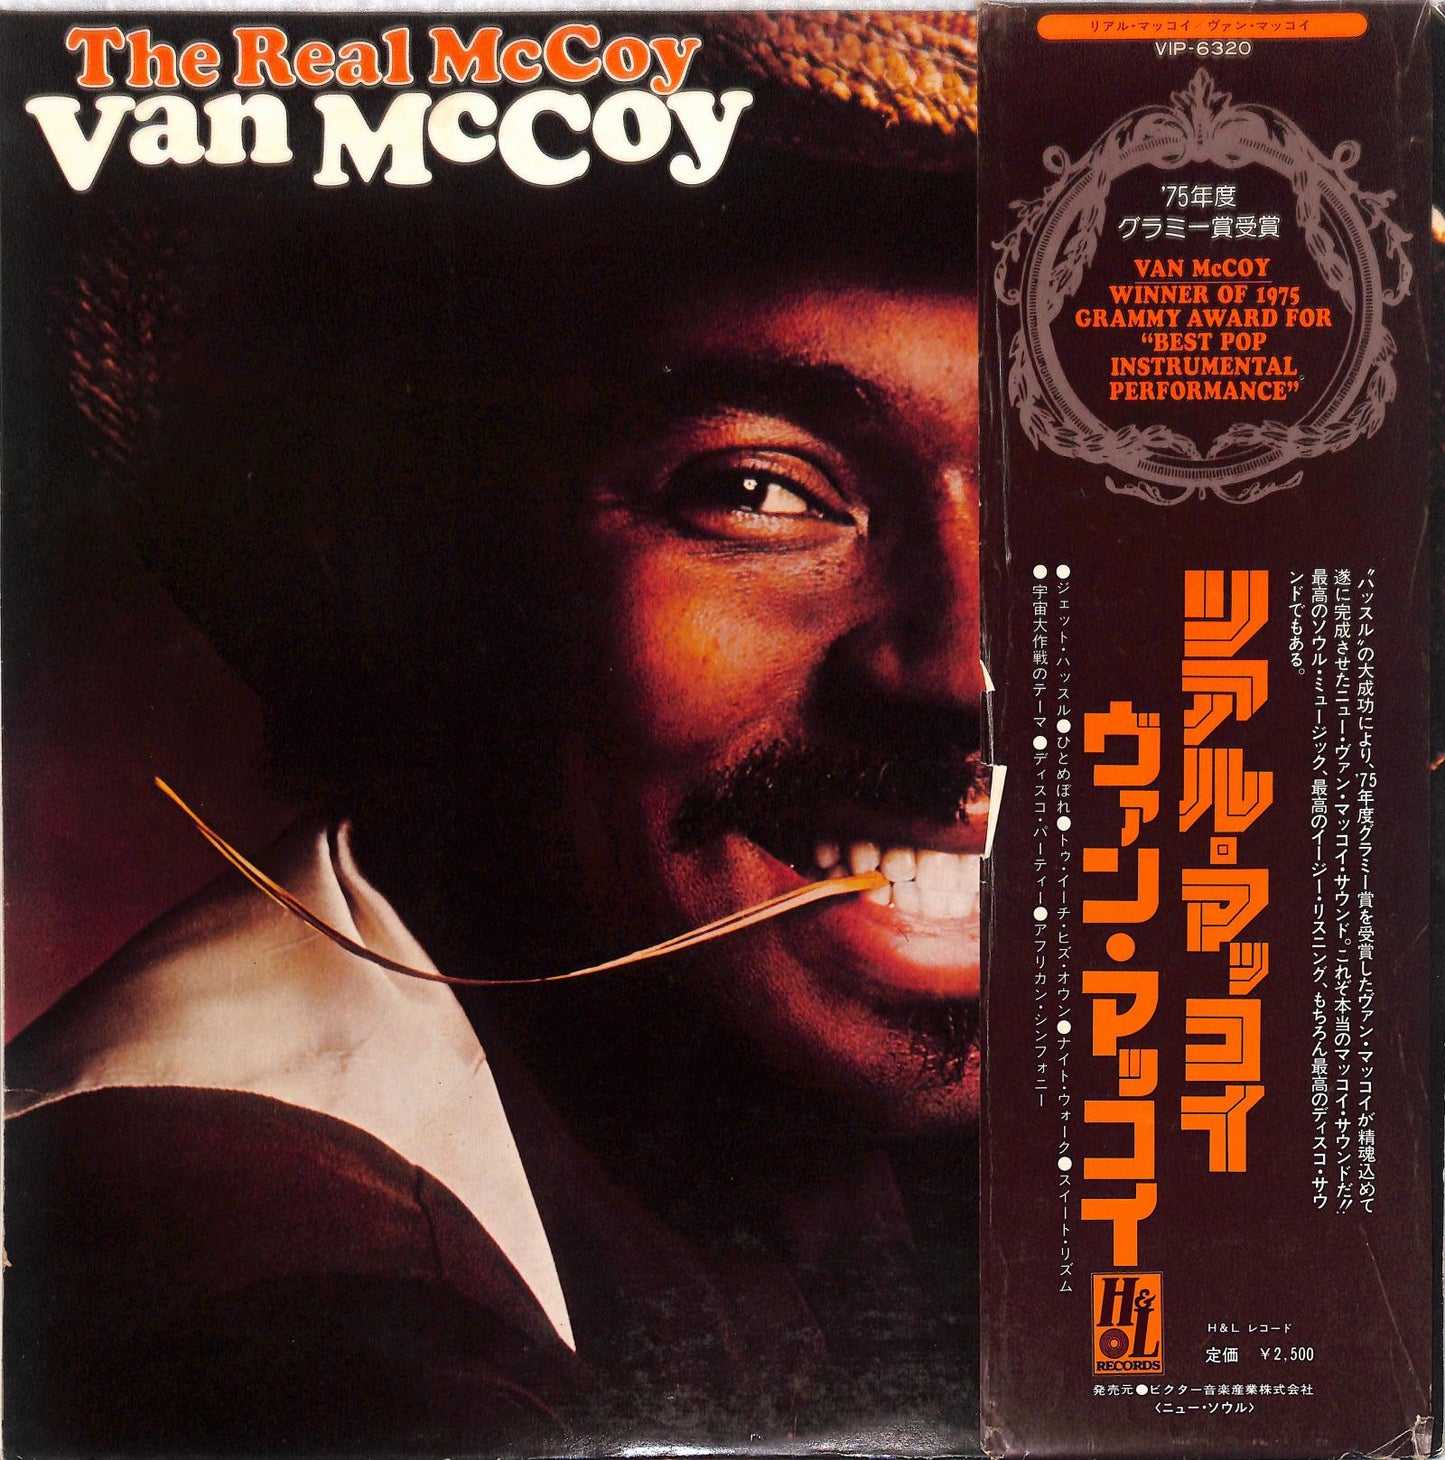 VAN MCCOY - The Real McCoy